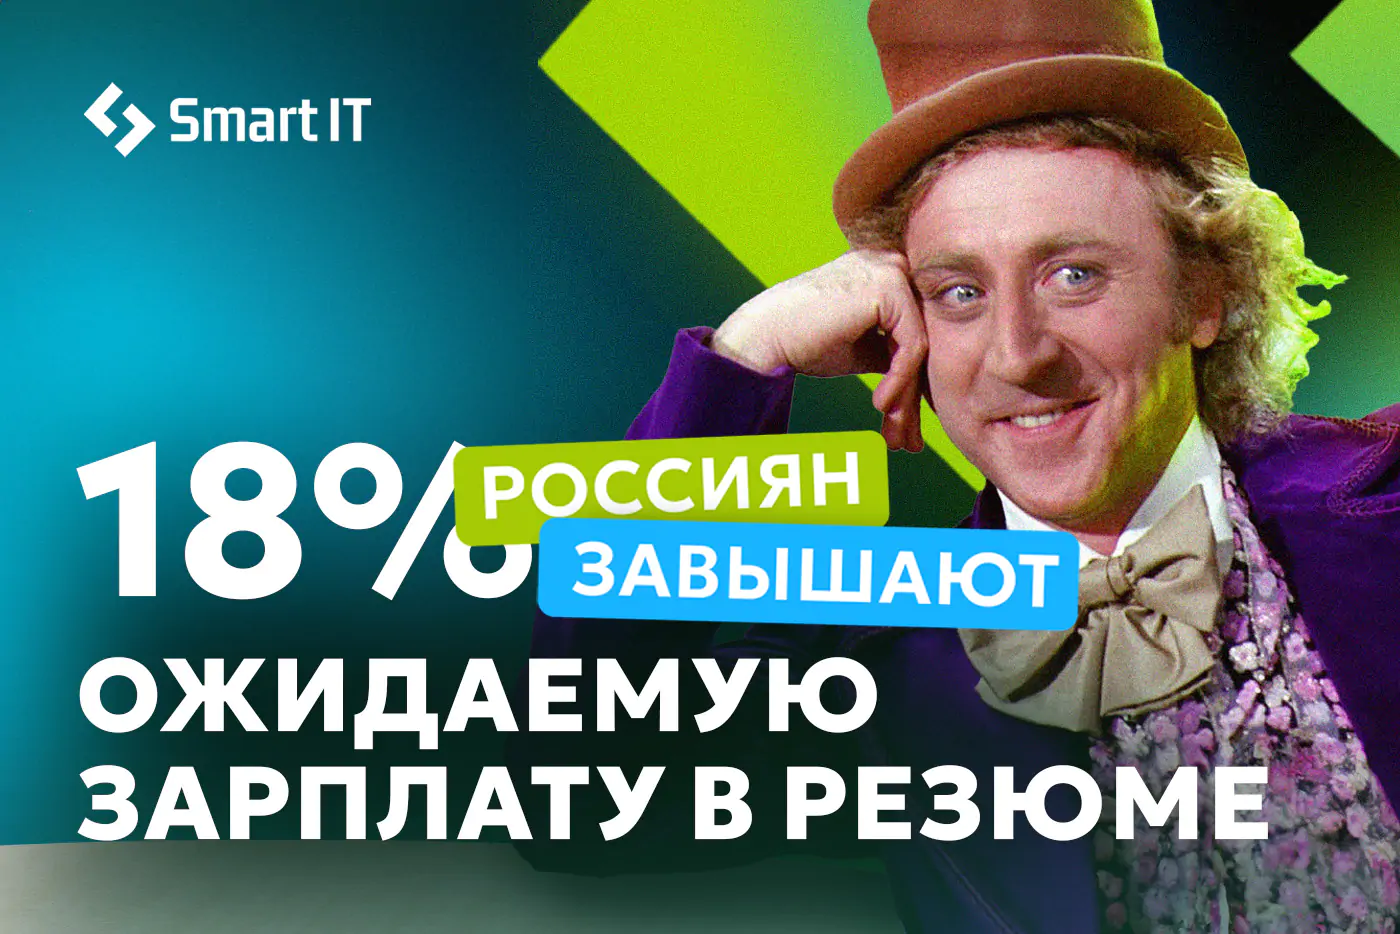 18% россиян завышают ожидаемую зарплату в резюме